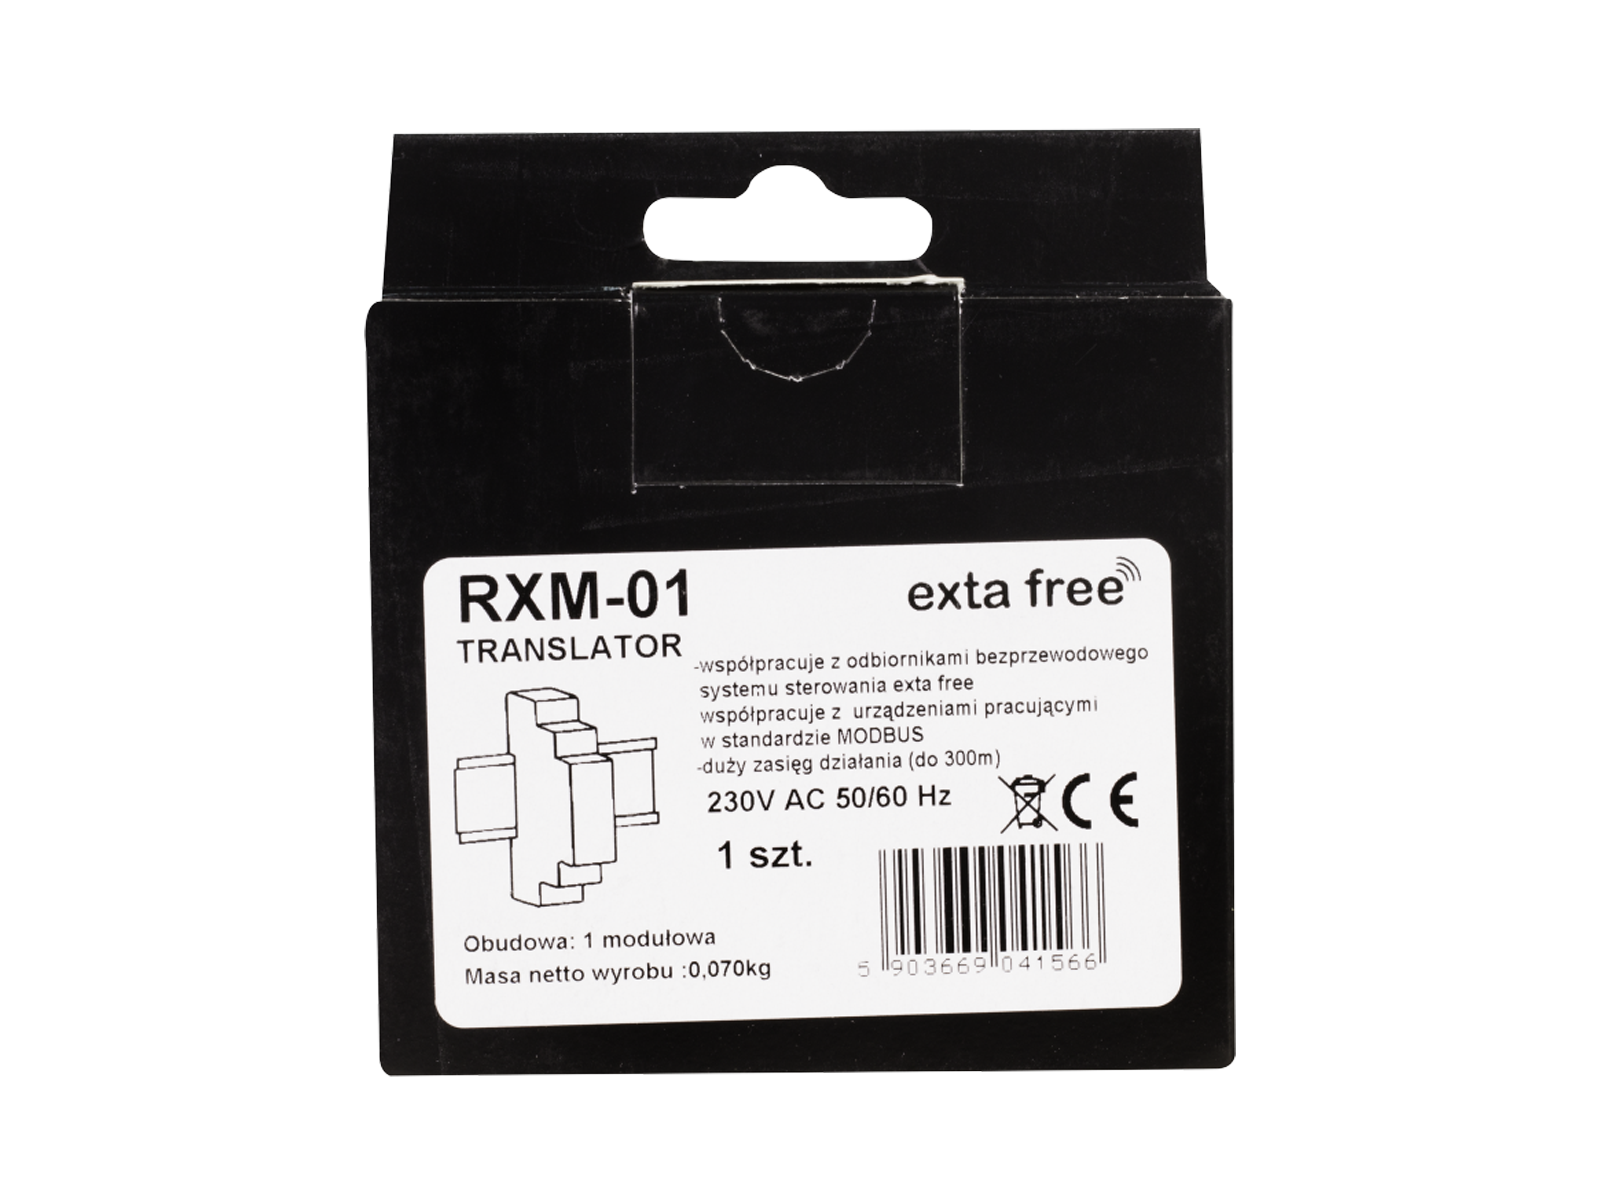 Ovládání bezdrátových zařízení RXM-01